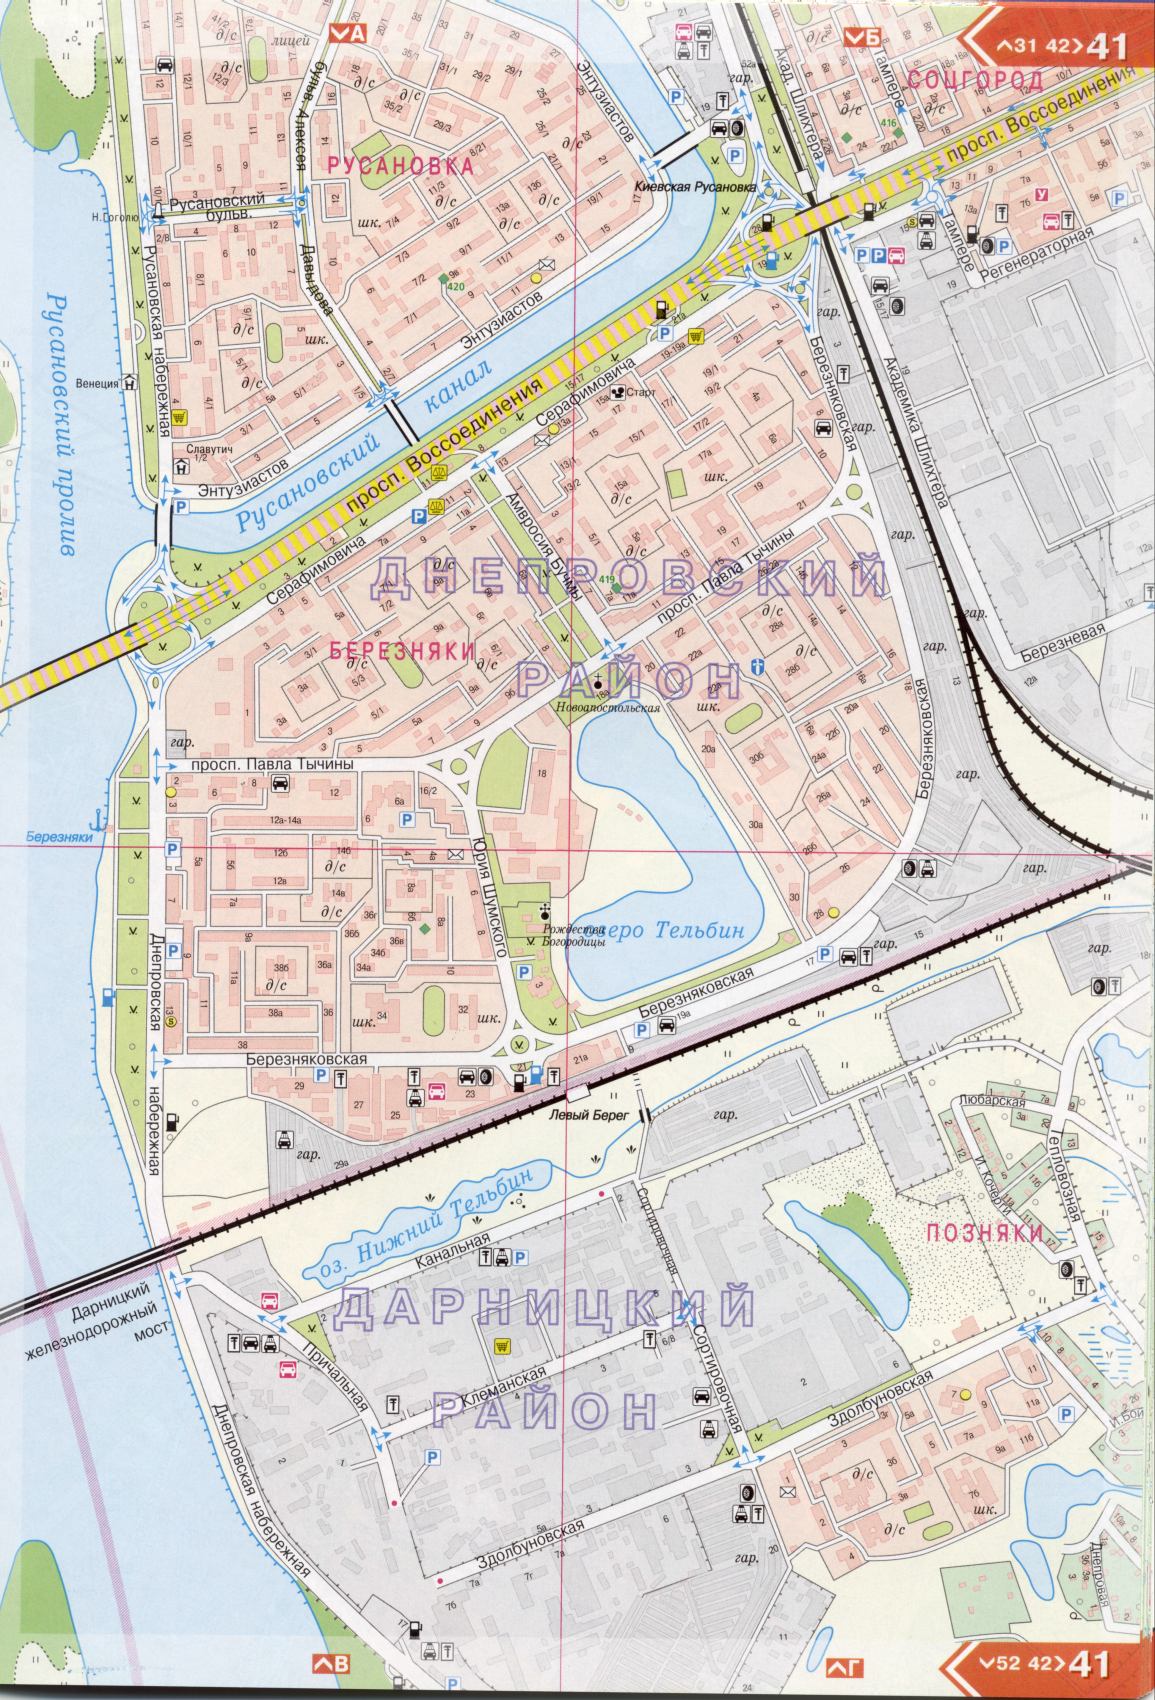 Карта Киева подробная в 1см=150м на 45 листах. Карта г.Киев из атласа автомобильных дорог. Скачать бесплатно подробную карту , H3